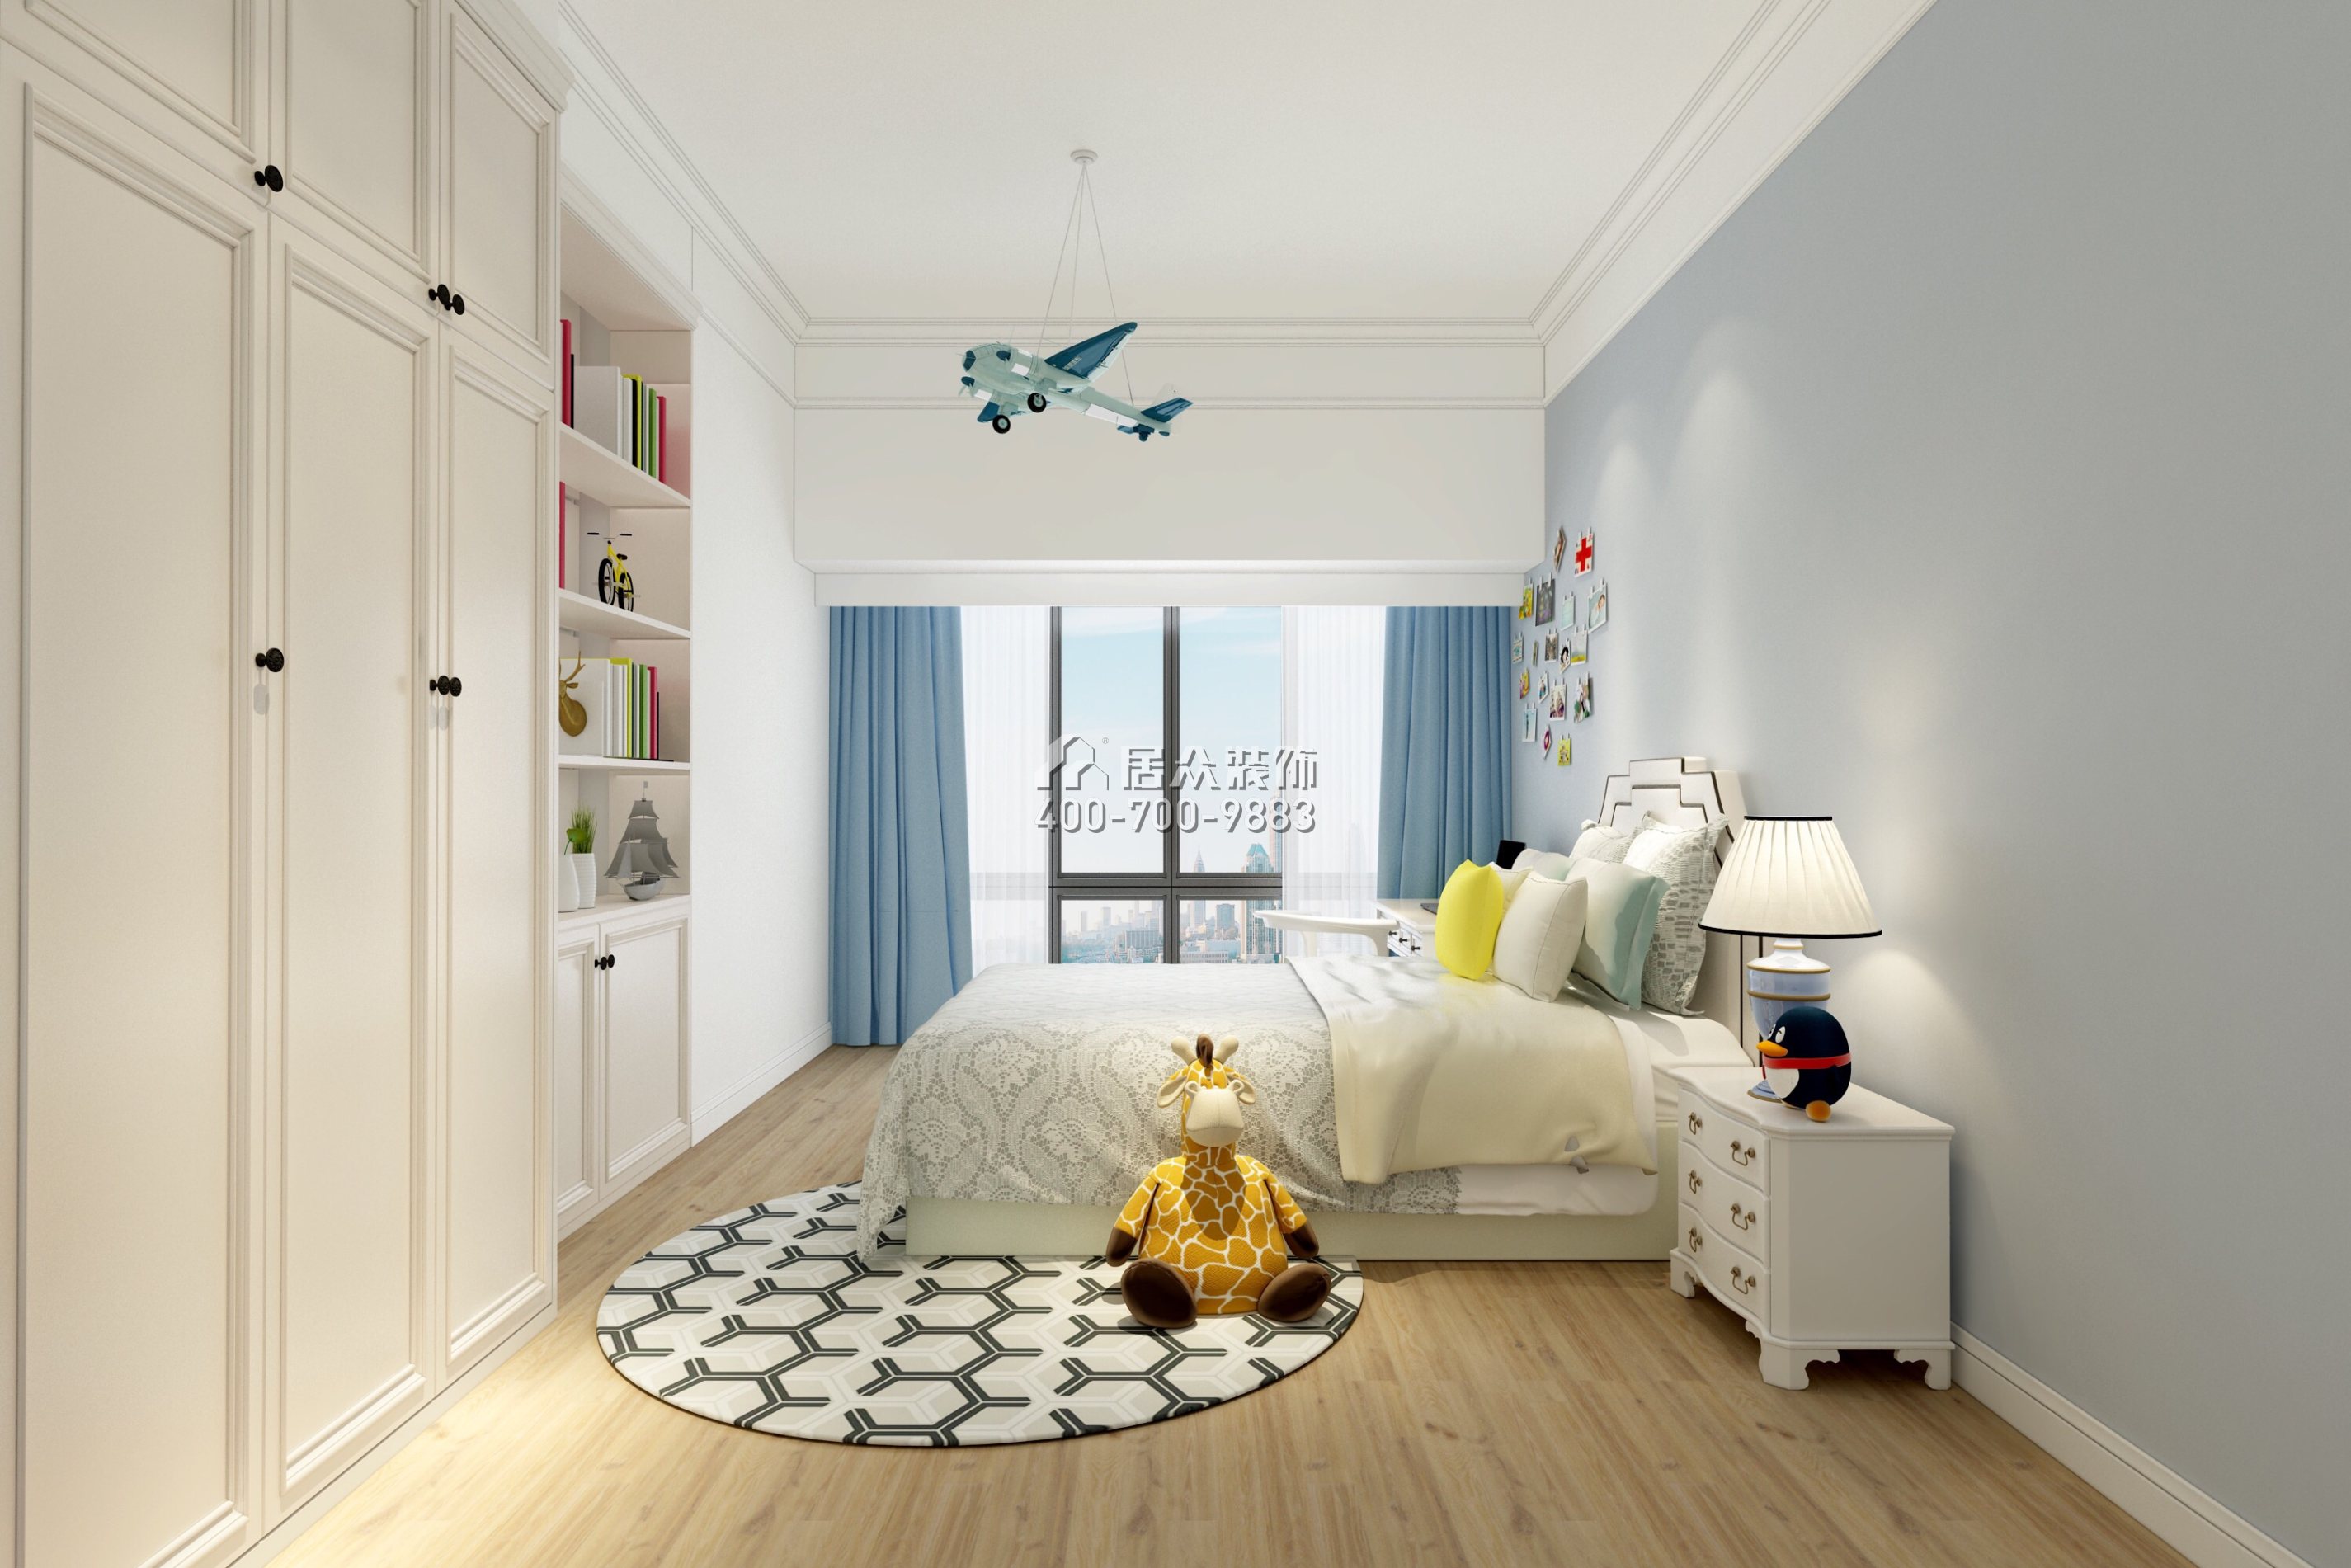 深物业前海港湾花园146平方米美式风格平层户型卧室装修效果图